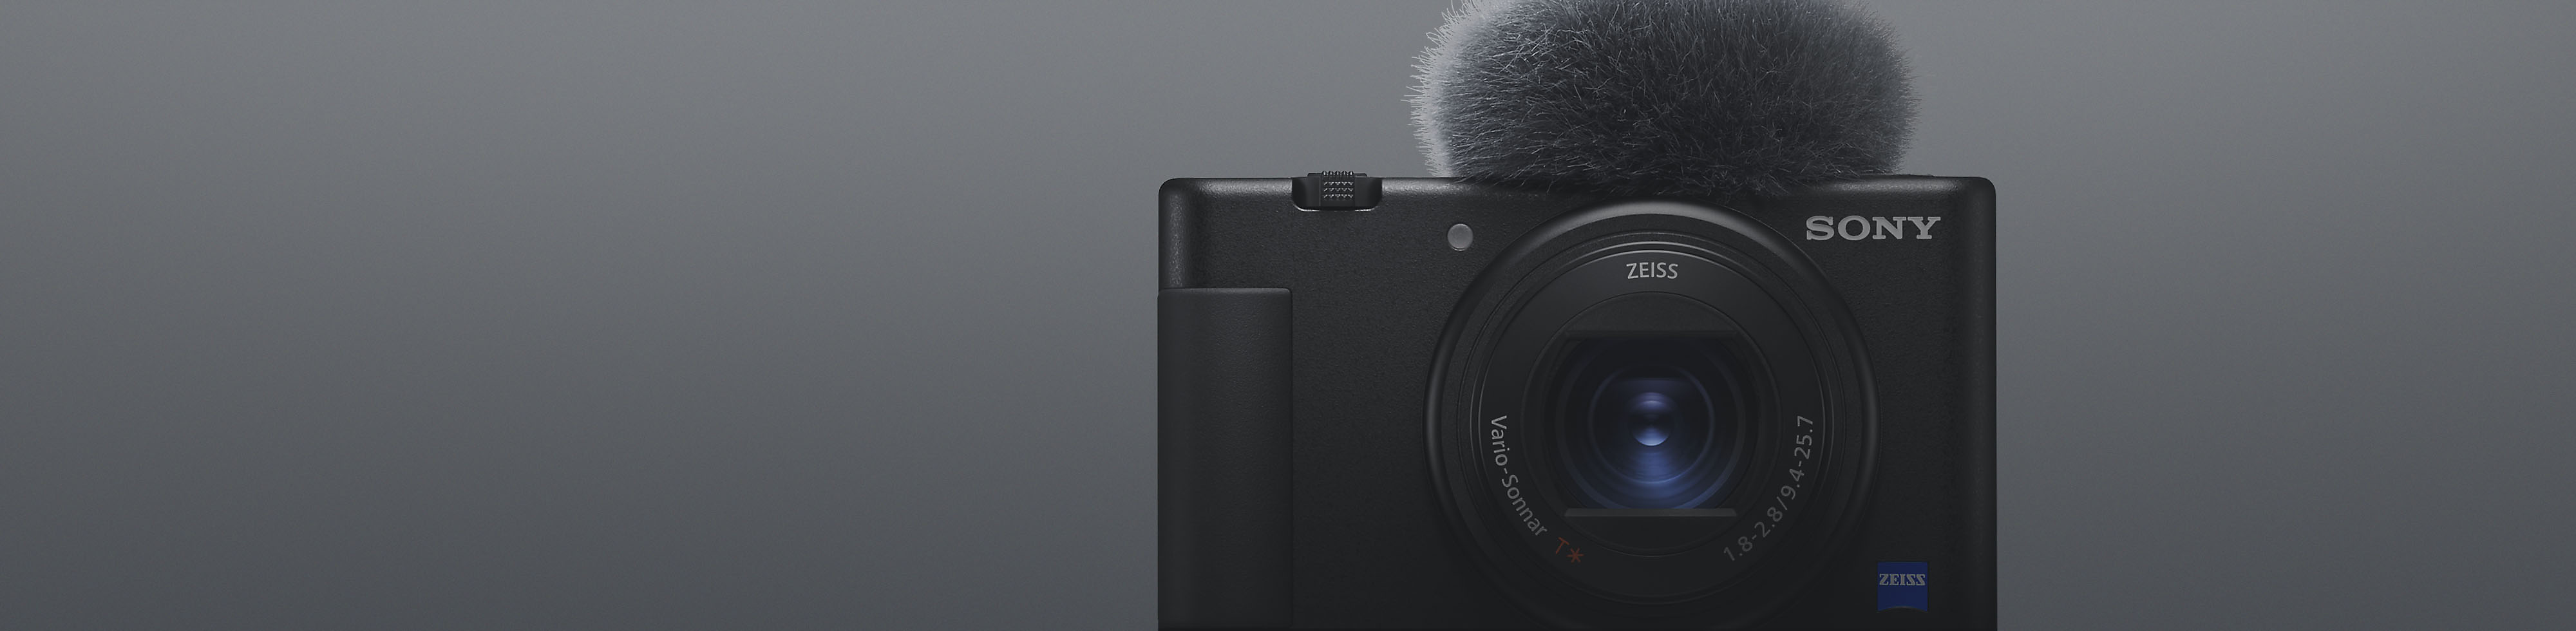 Вид спереди на компактную камеру Sony черного цвета с прикрепленным микрофоном